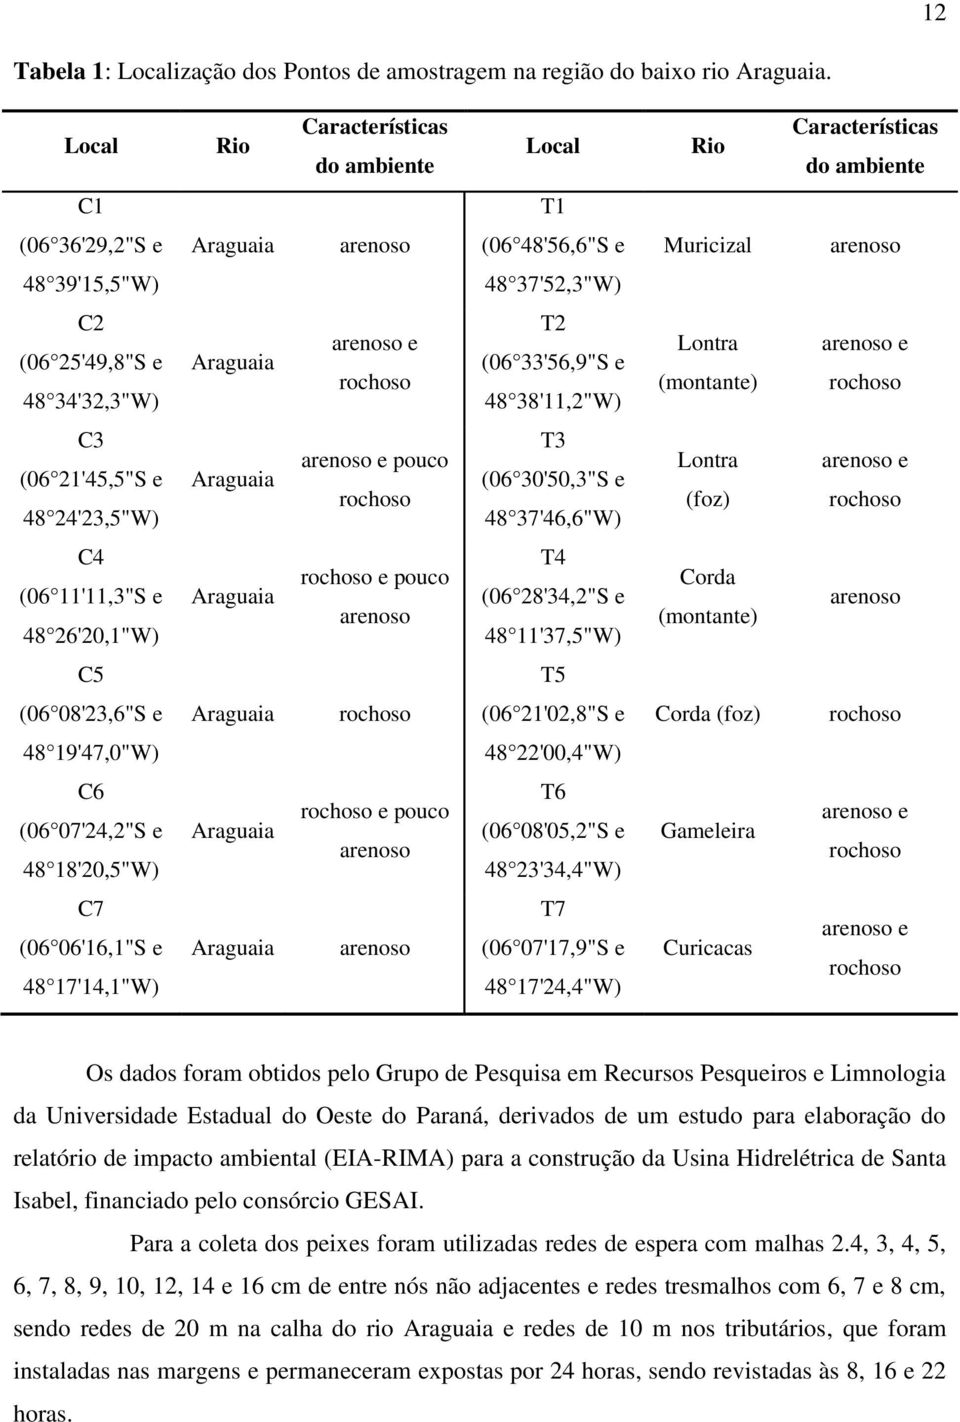 34'32,3"W) Araguaia arenoso e rochoso T2 (06 33'56,9"S e 48 38'11,2"W) Lontra (montante) arenoso e rochoso C3 (06 21'45,5"S e 48 24'23,5"W) Araguaia arenoso e pouco rochoso T3 (06 30'50,3"S e 48